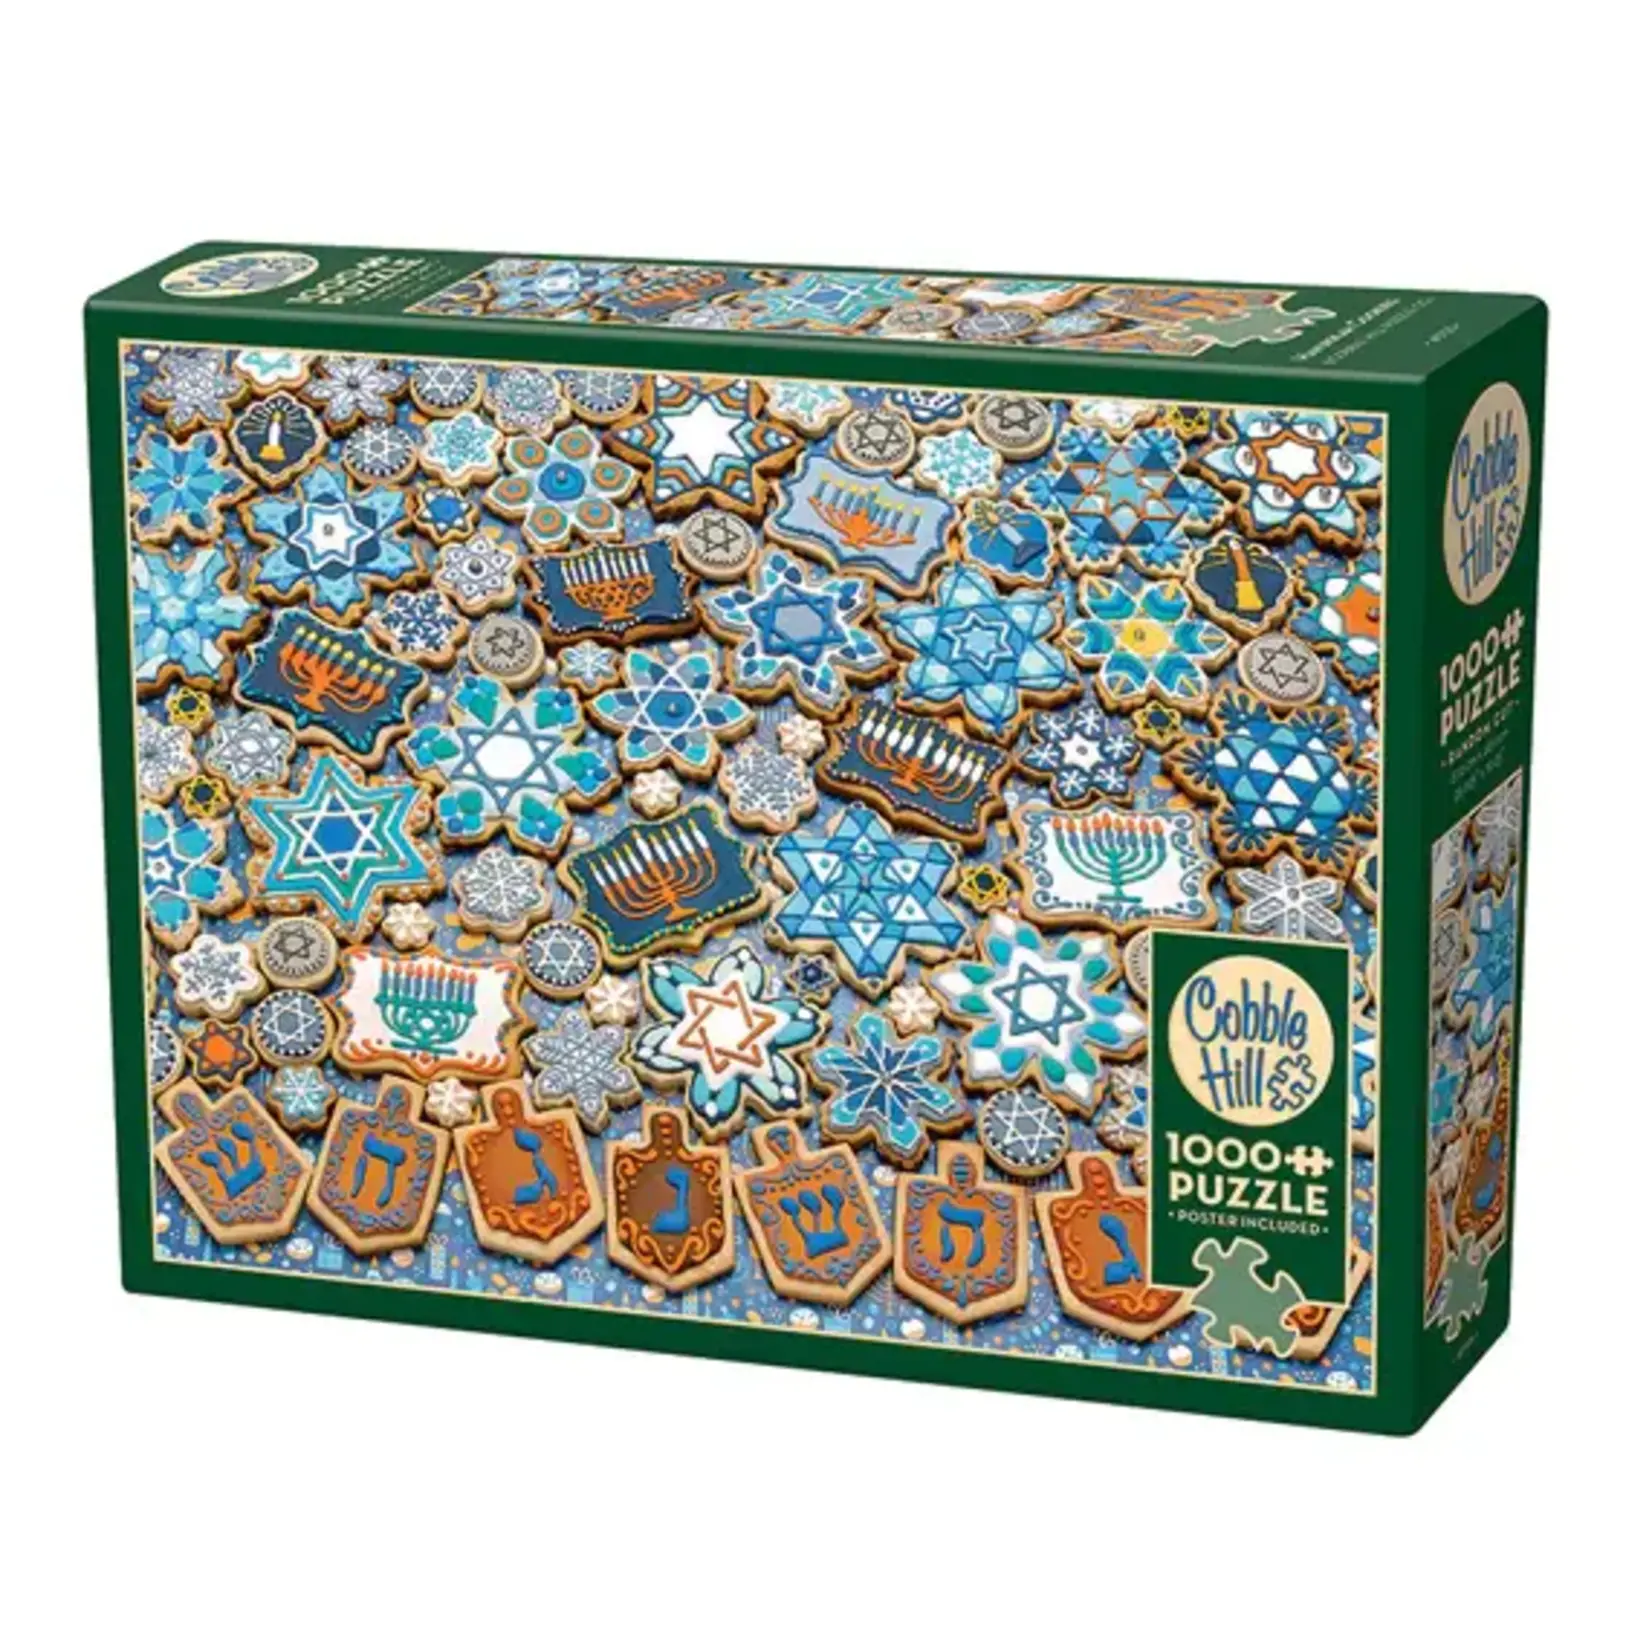 Cobble Hill Cobble Hill: Hanukkah Cookies Puzzle (1000ct)